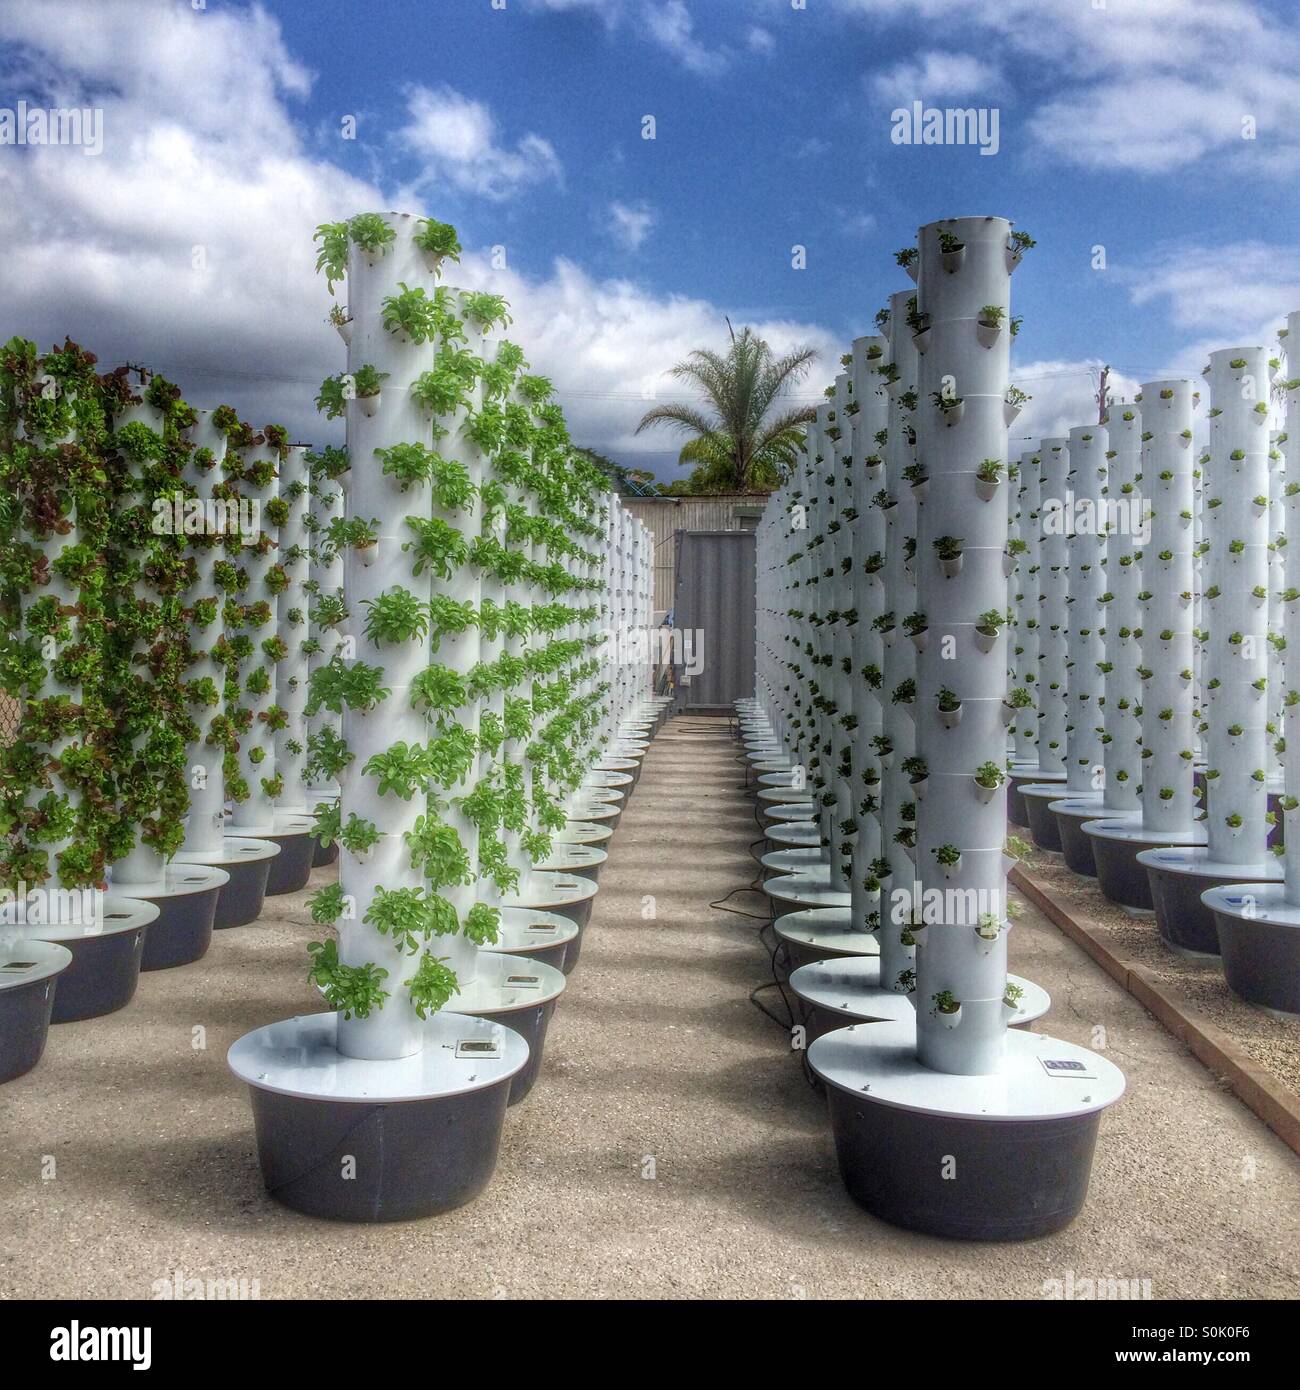 Boden-freie aeroponic vertikale Pflanzgefäße ermöglichen Stadtbewohner,  frisches Gemüse auf Pflaster, Dächern oder Balkonen zu wachsen  Stockfotografie - Alamy